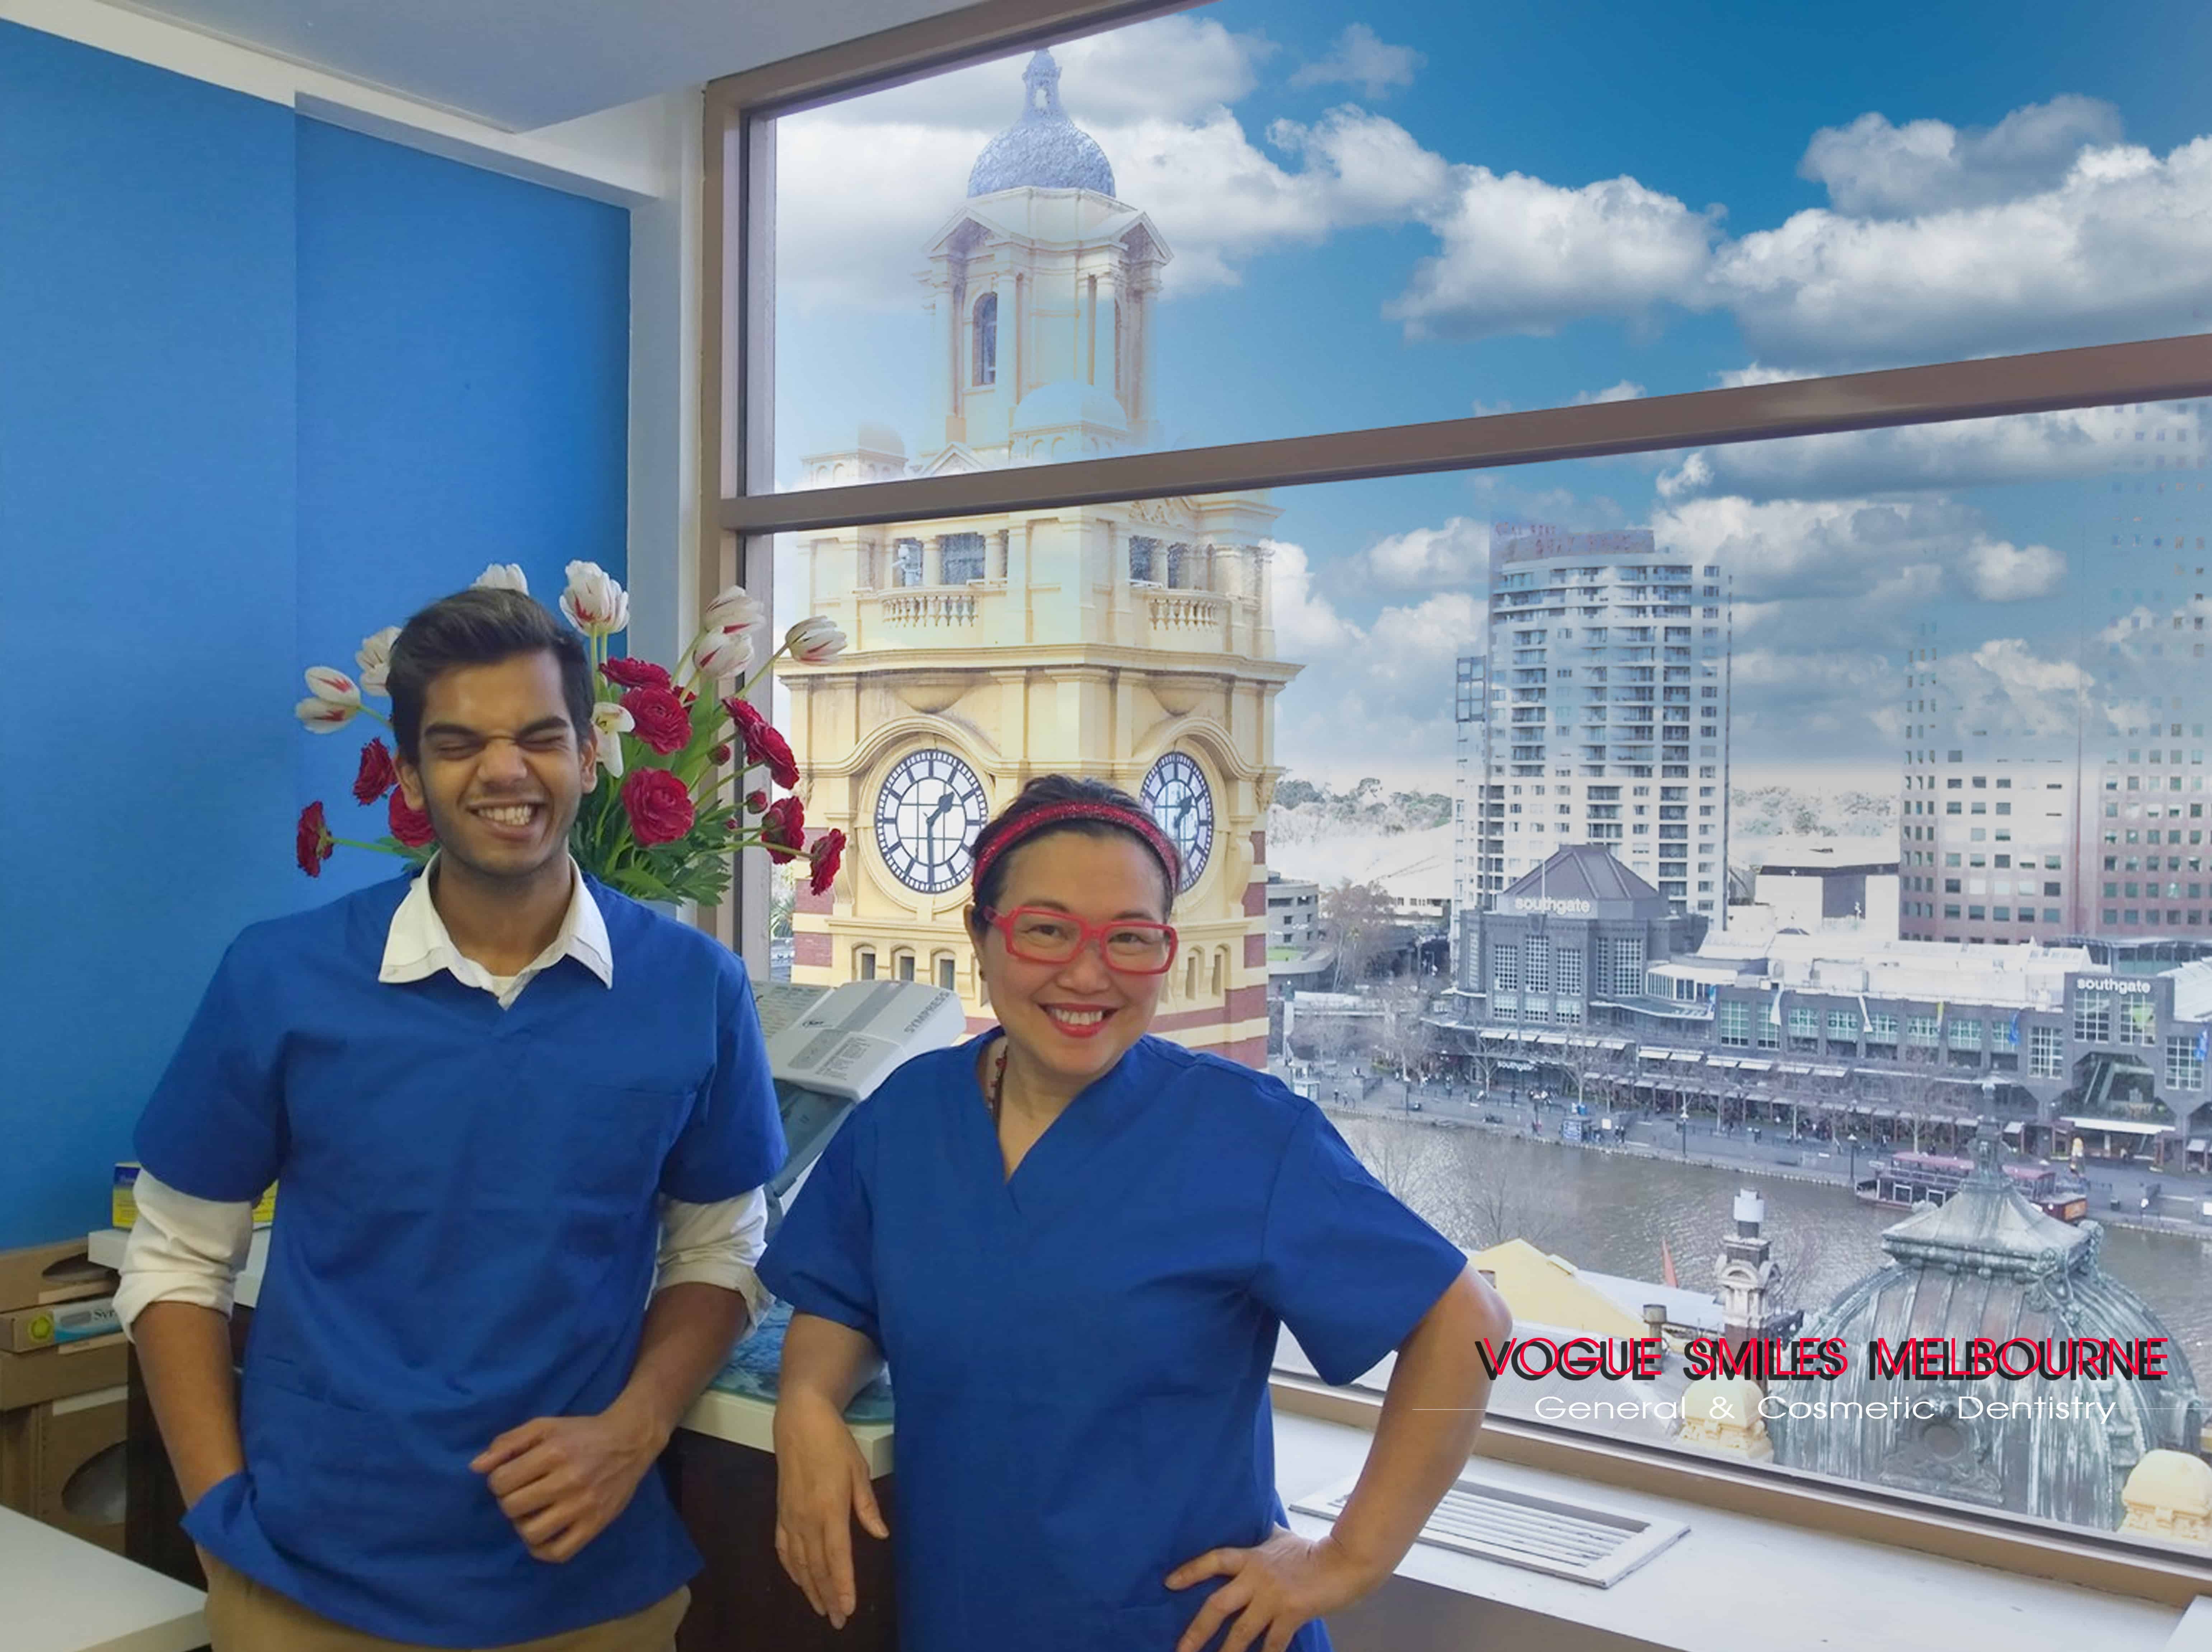 Filipino Dentist - Pinoy Dentist in Melbourne CBD Dr Zenaidy Castro